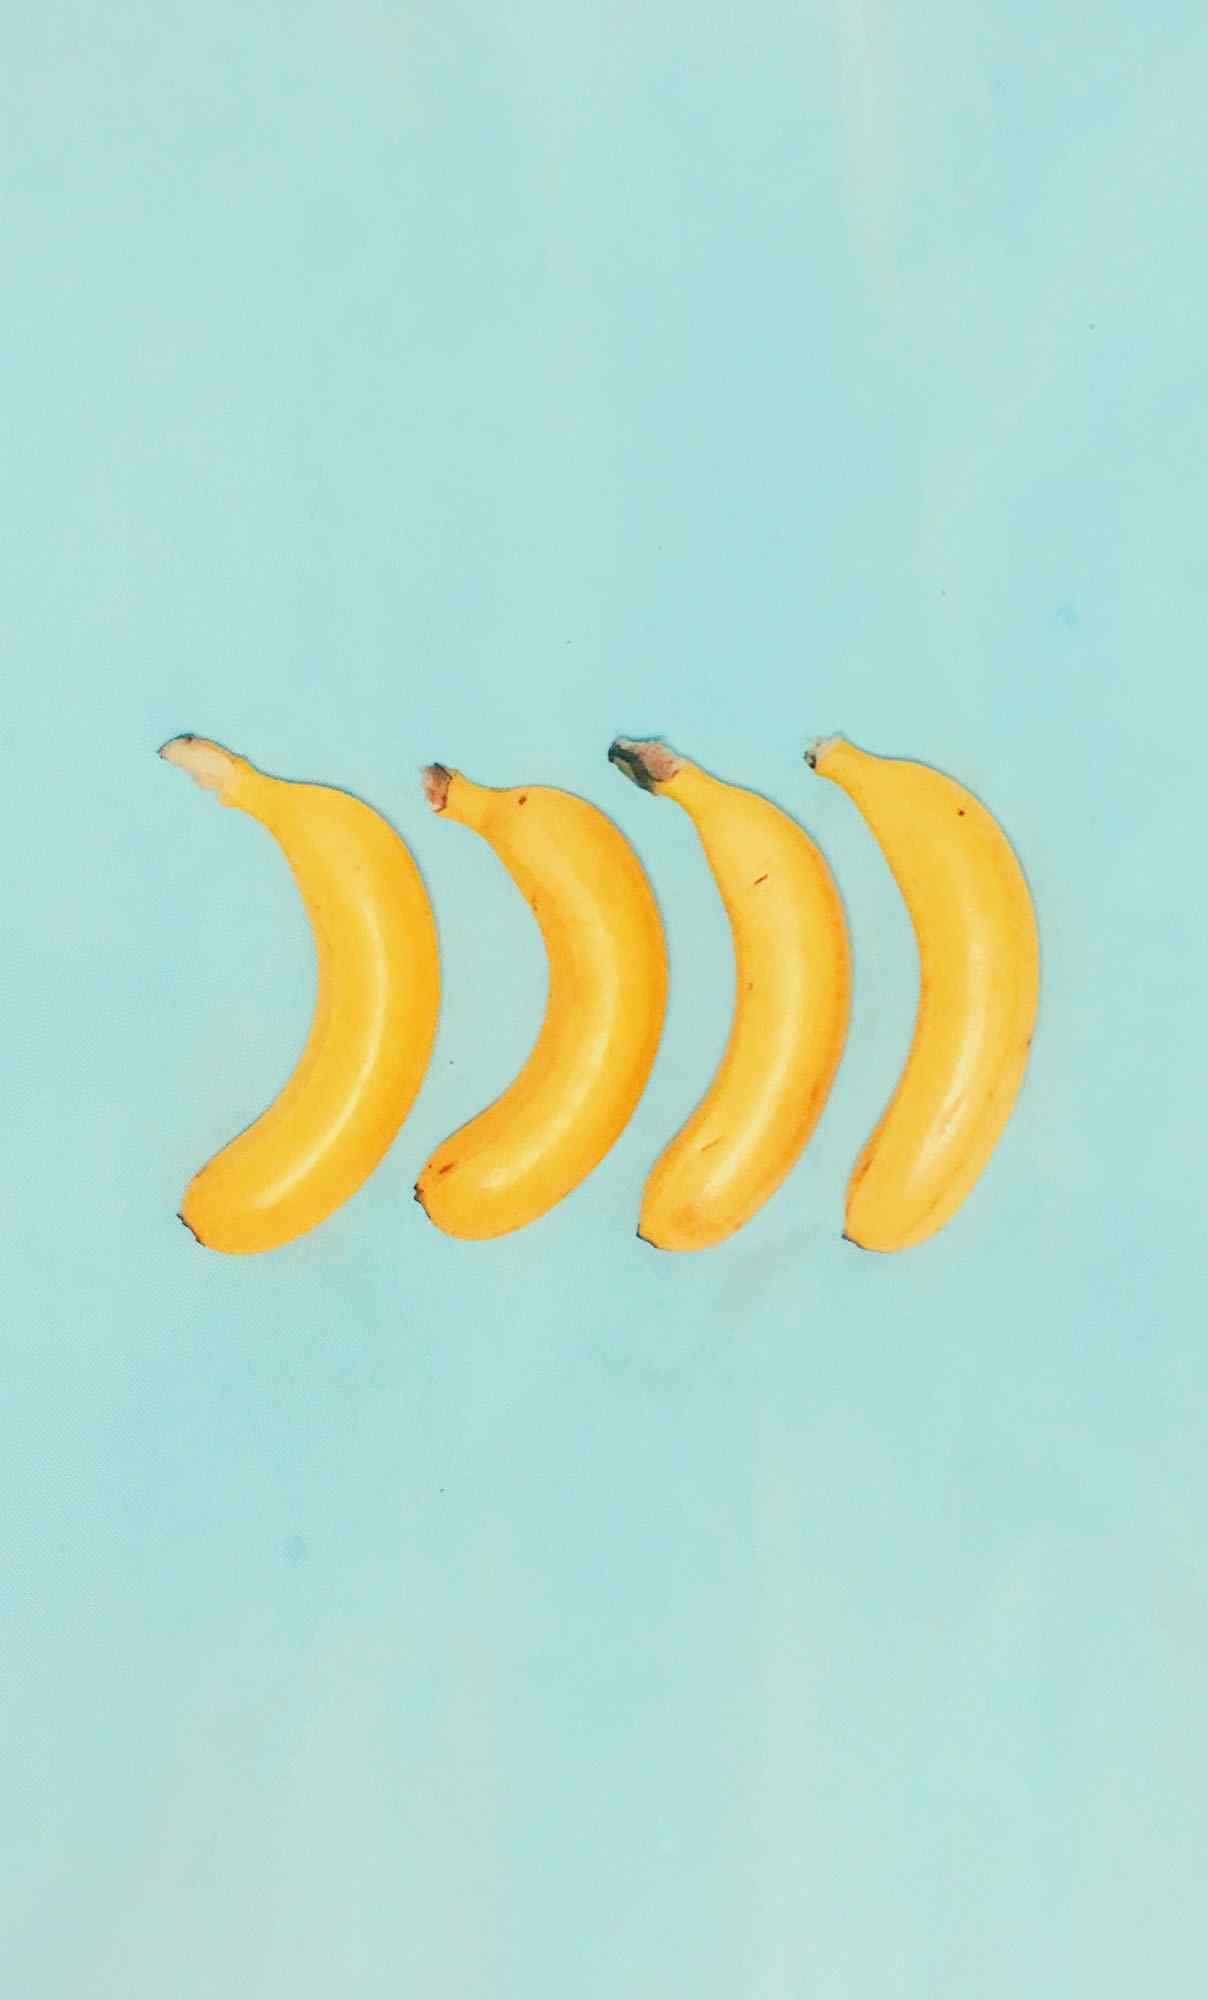 四只香蕉排排列图片简约手机壁纸